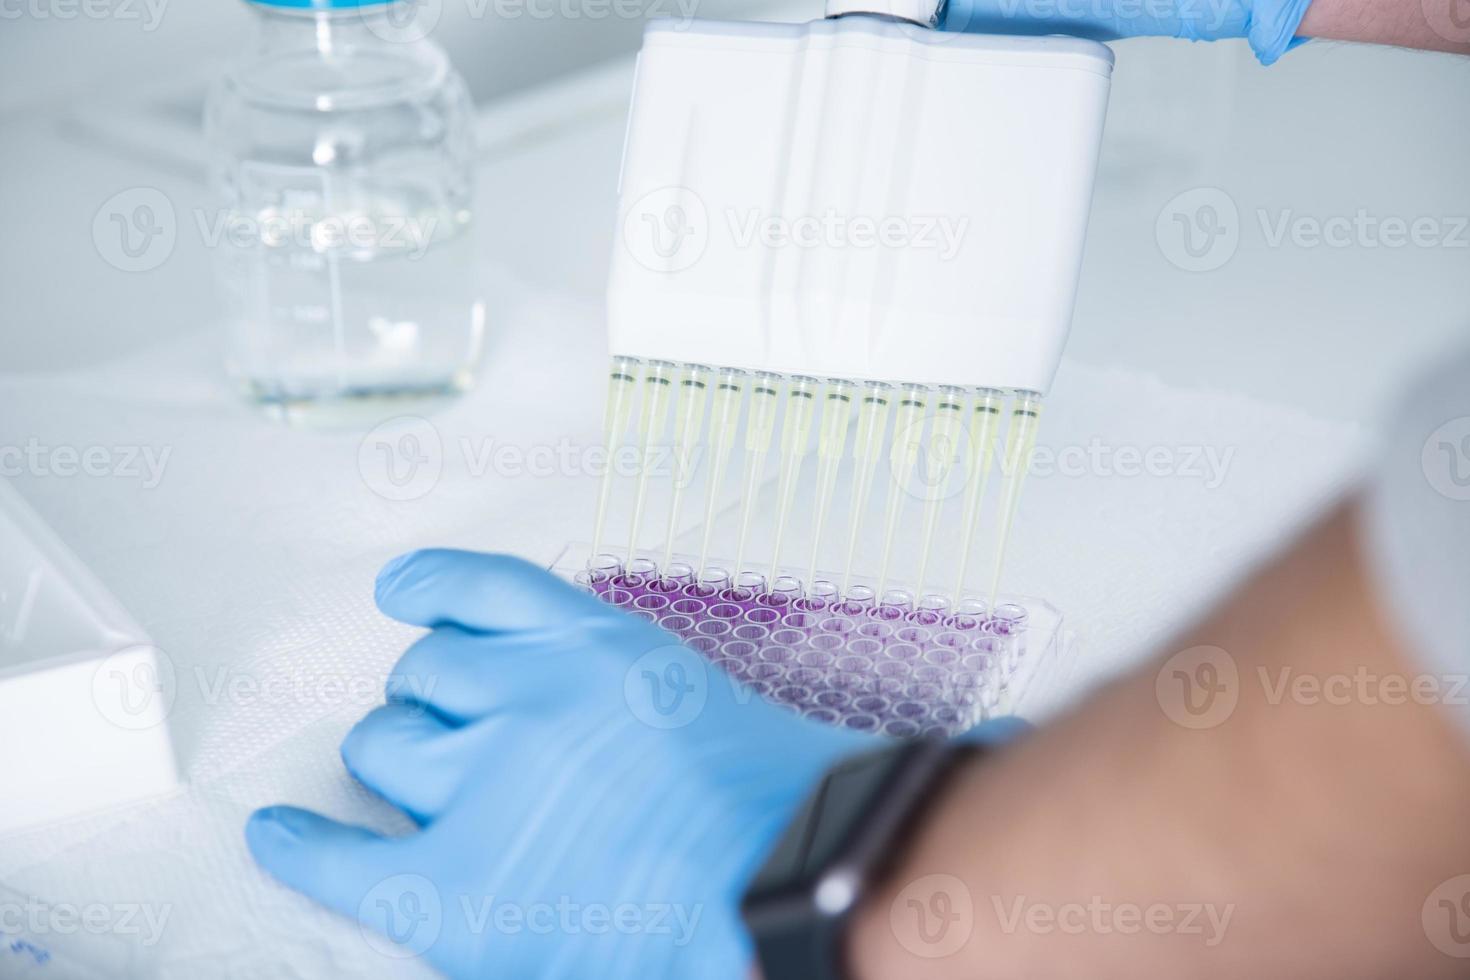 cultivo celular en el laboratorio de medicina, medicina y cultivo celular foto